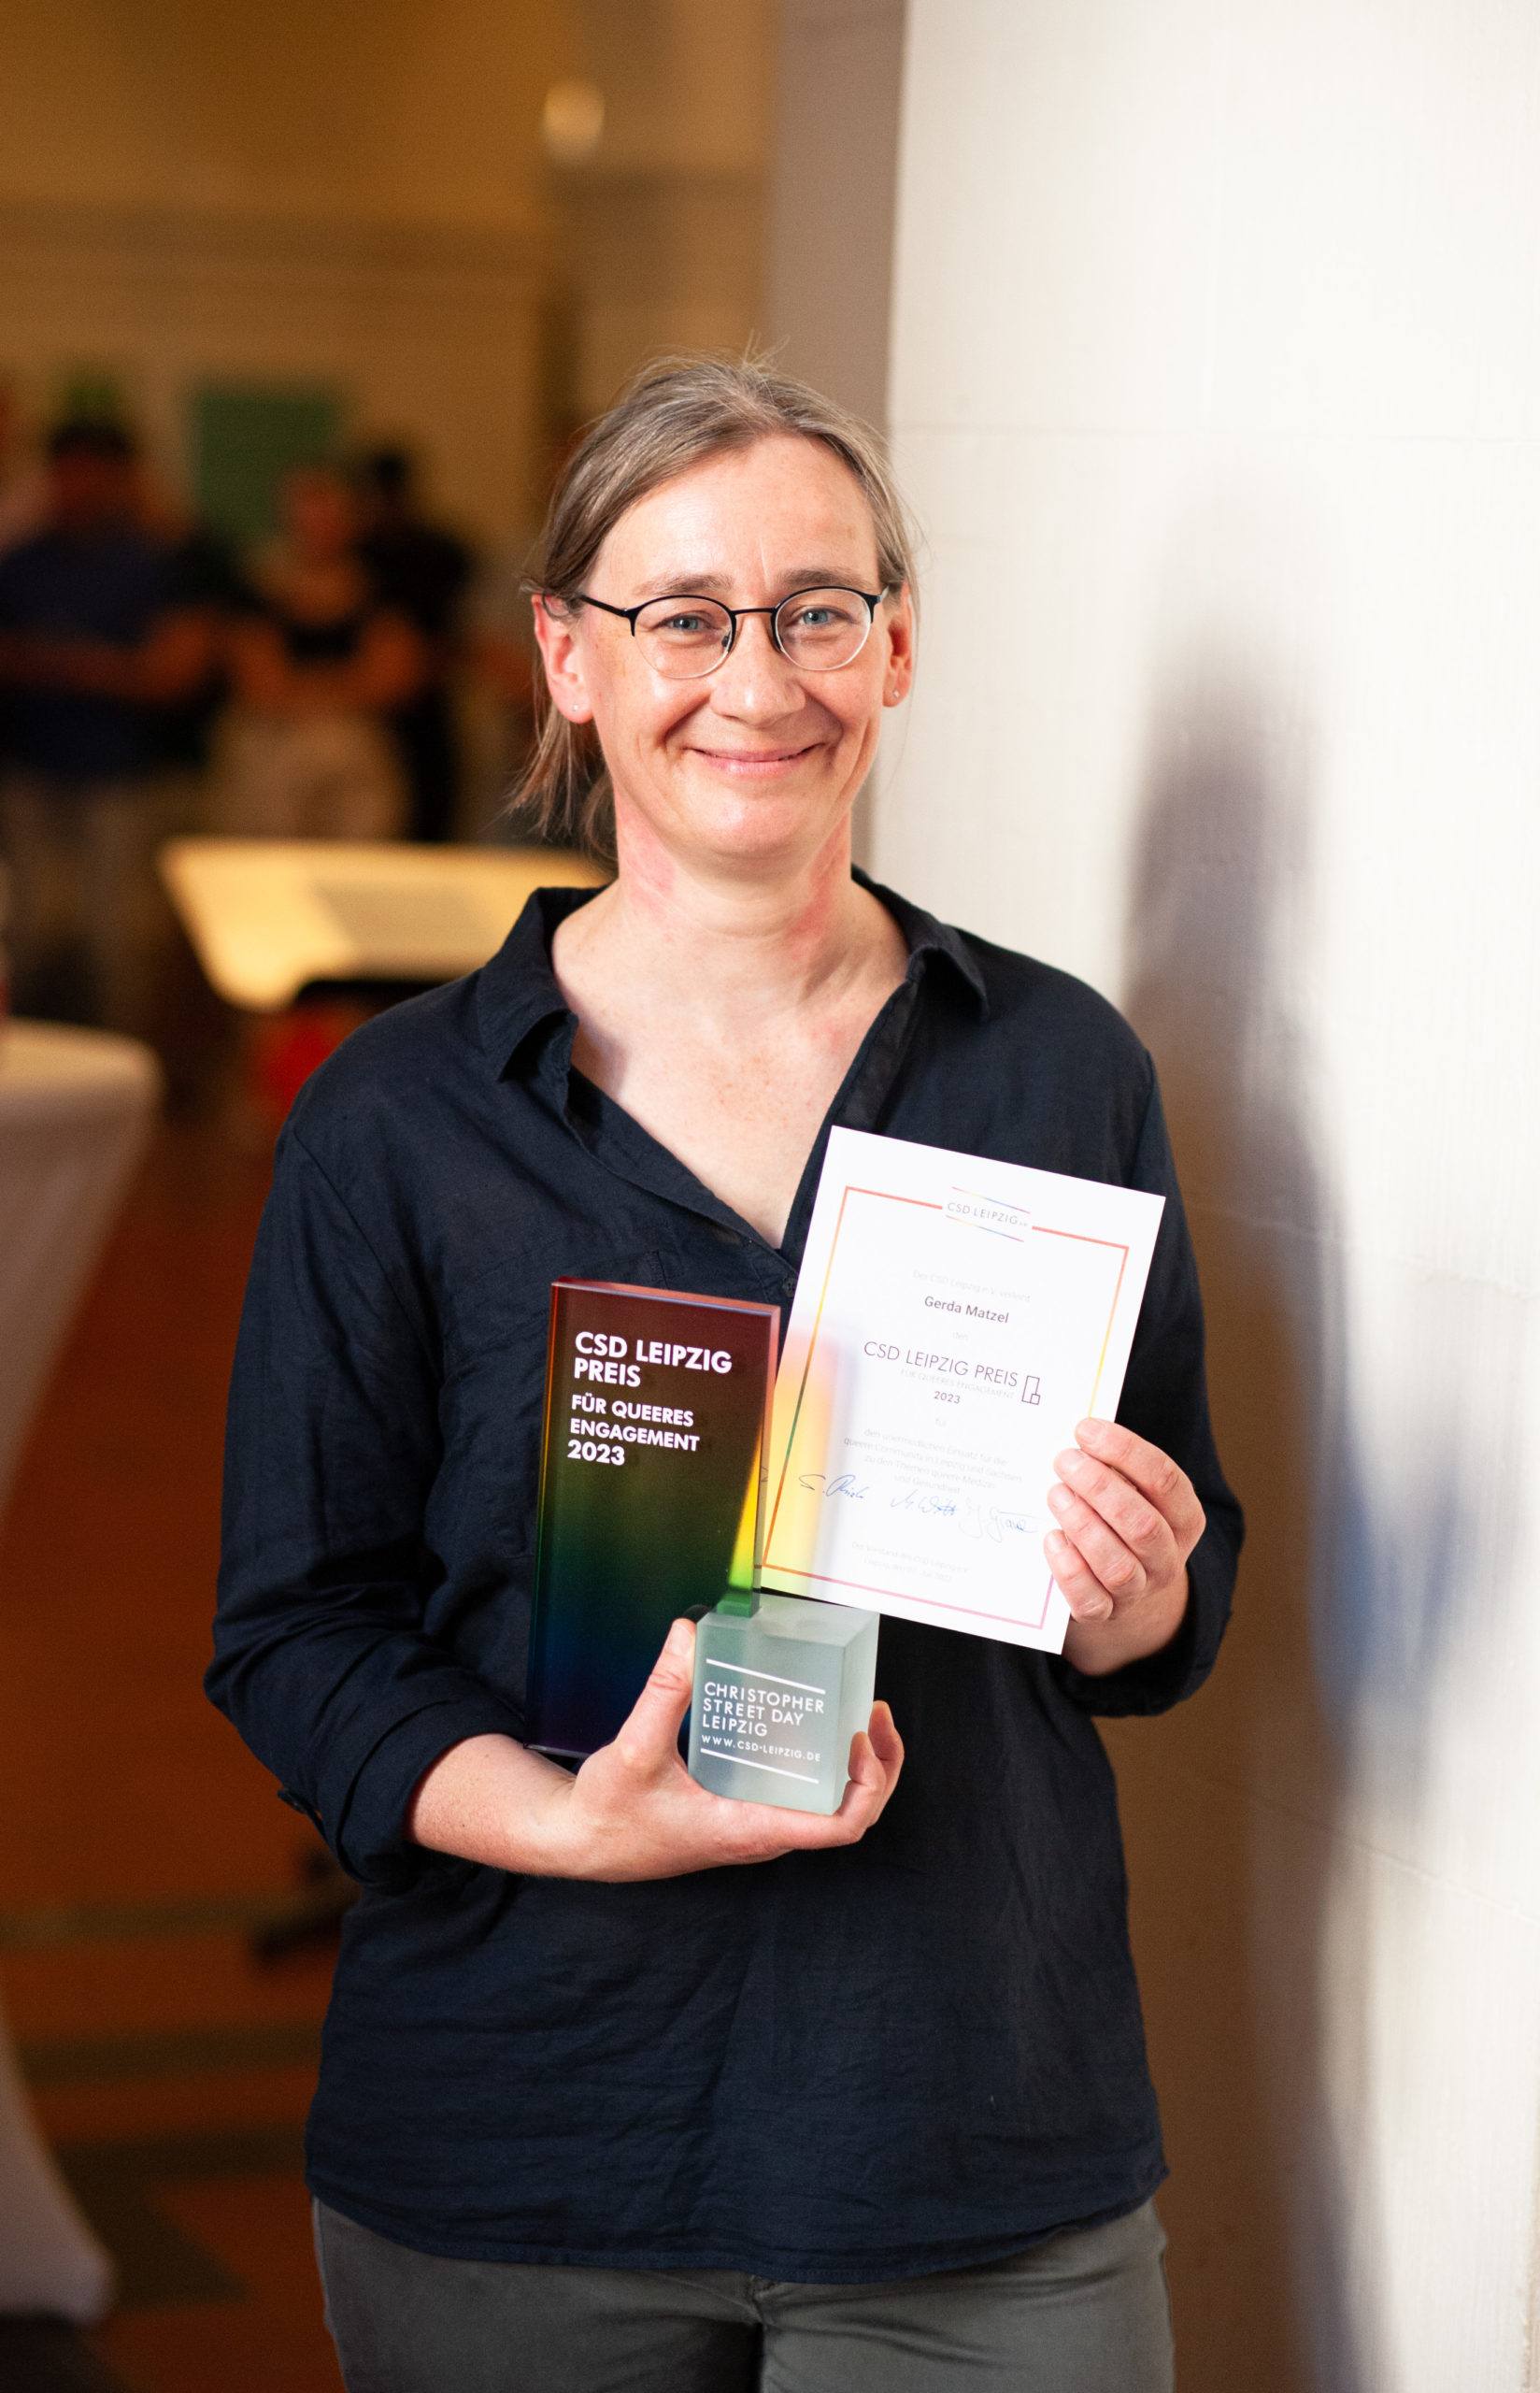 CSD Leipzig Preisträger:in Gerda Matzel